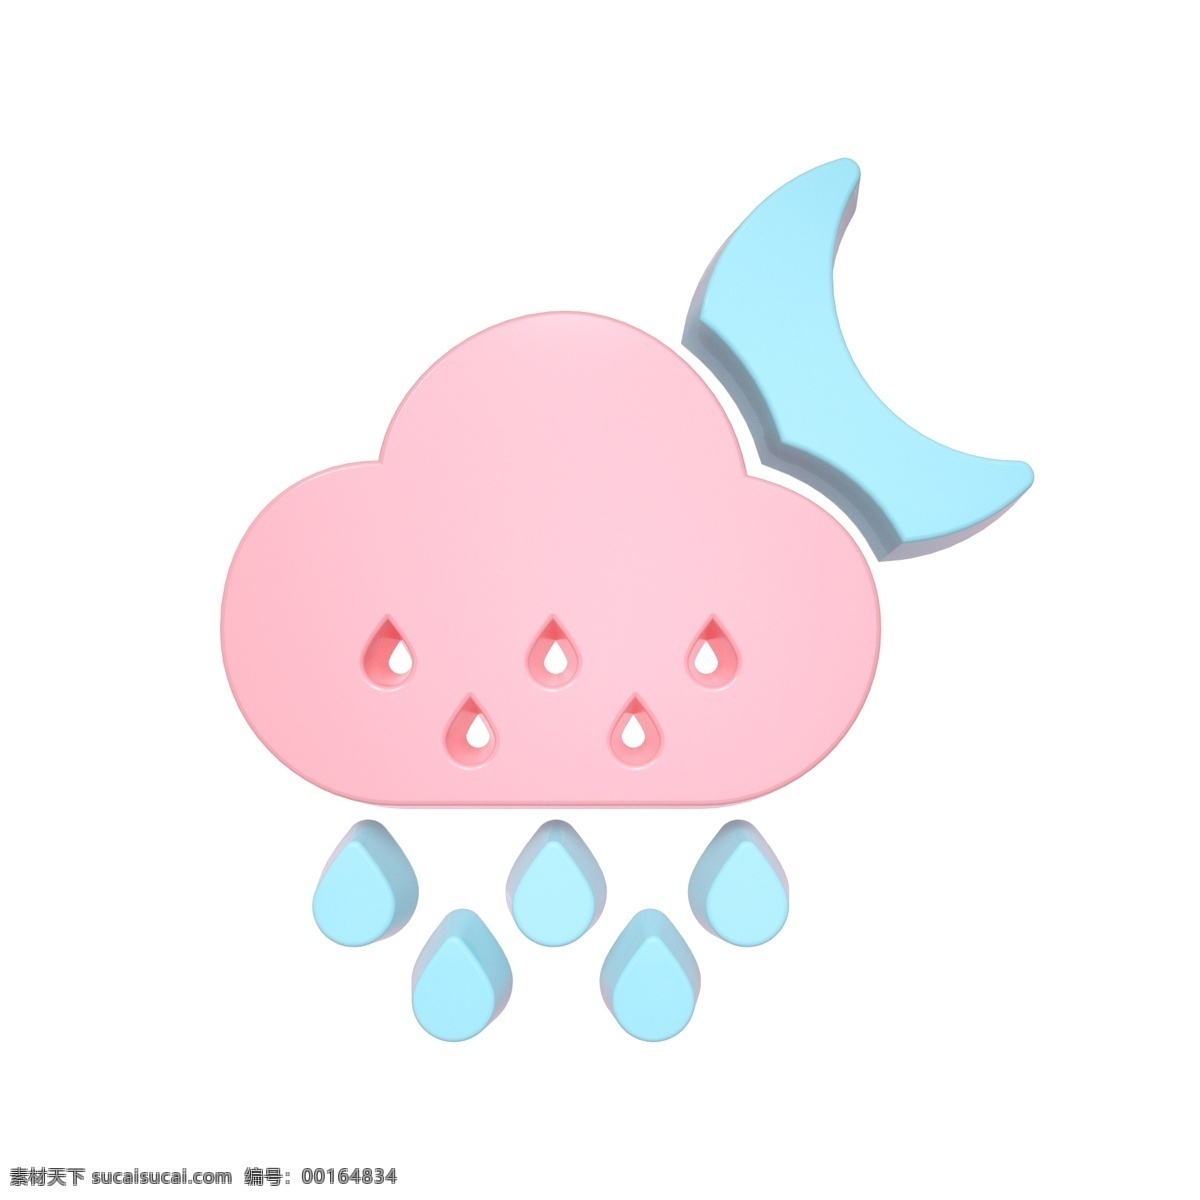 柔 色 天气 类 立体 图标 夜间 小雨 c4d 3d 柔色 粉色 青色 天气类图标 通用图标装饰 可爱 常用 夜间小雨